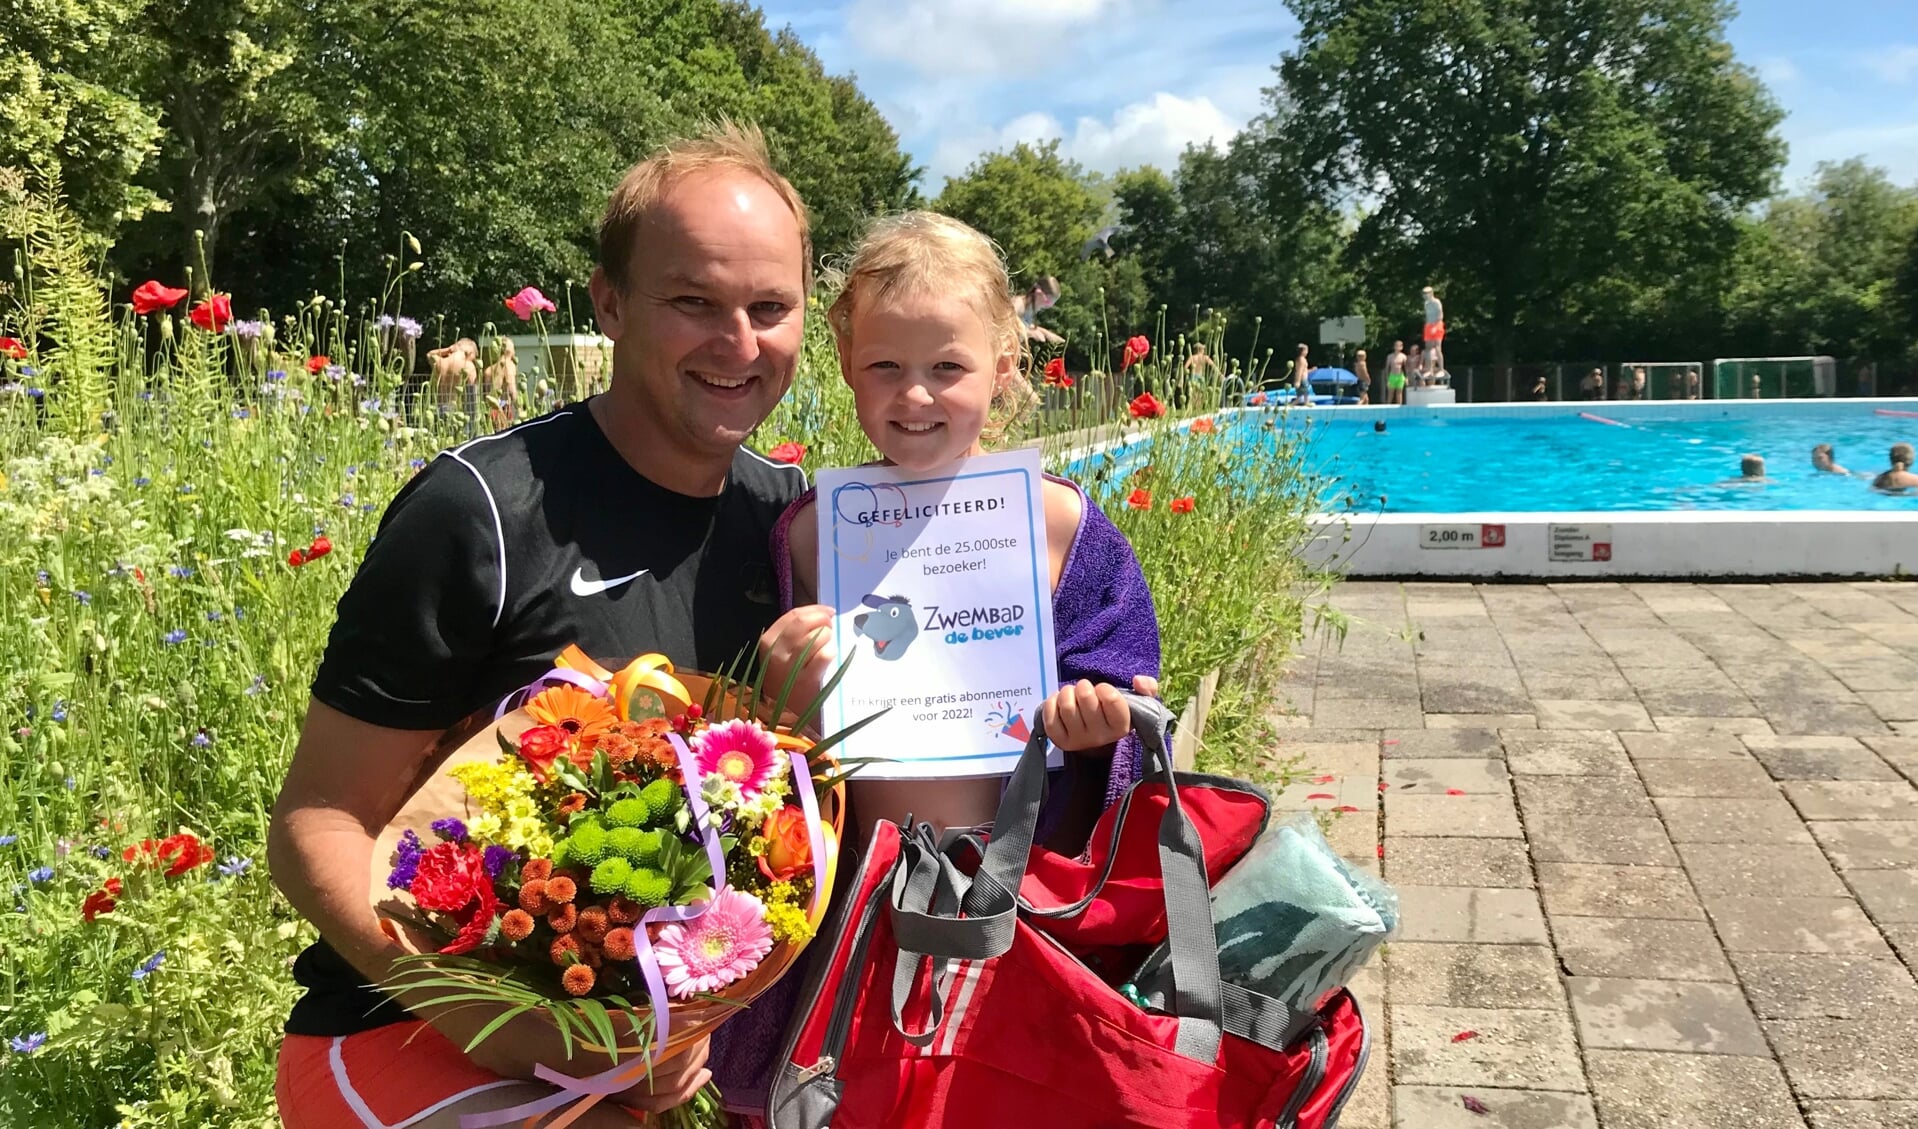 De 7-jarige Jetske Veldt kwam vrijdagmiddag zwemmen met haar vader. 